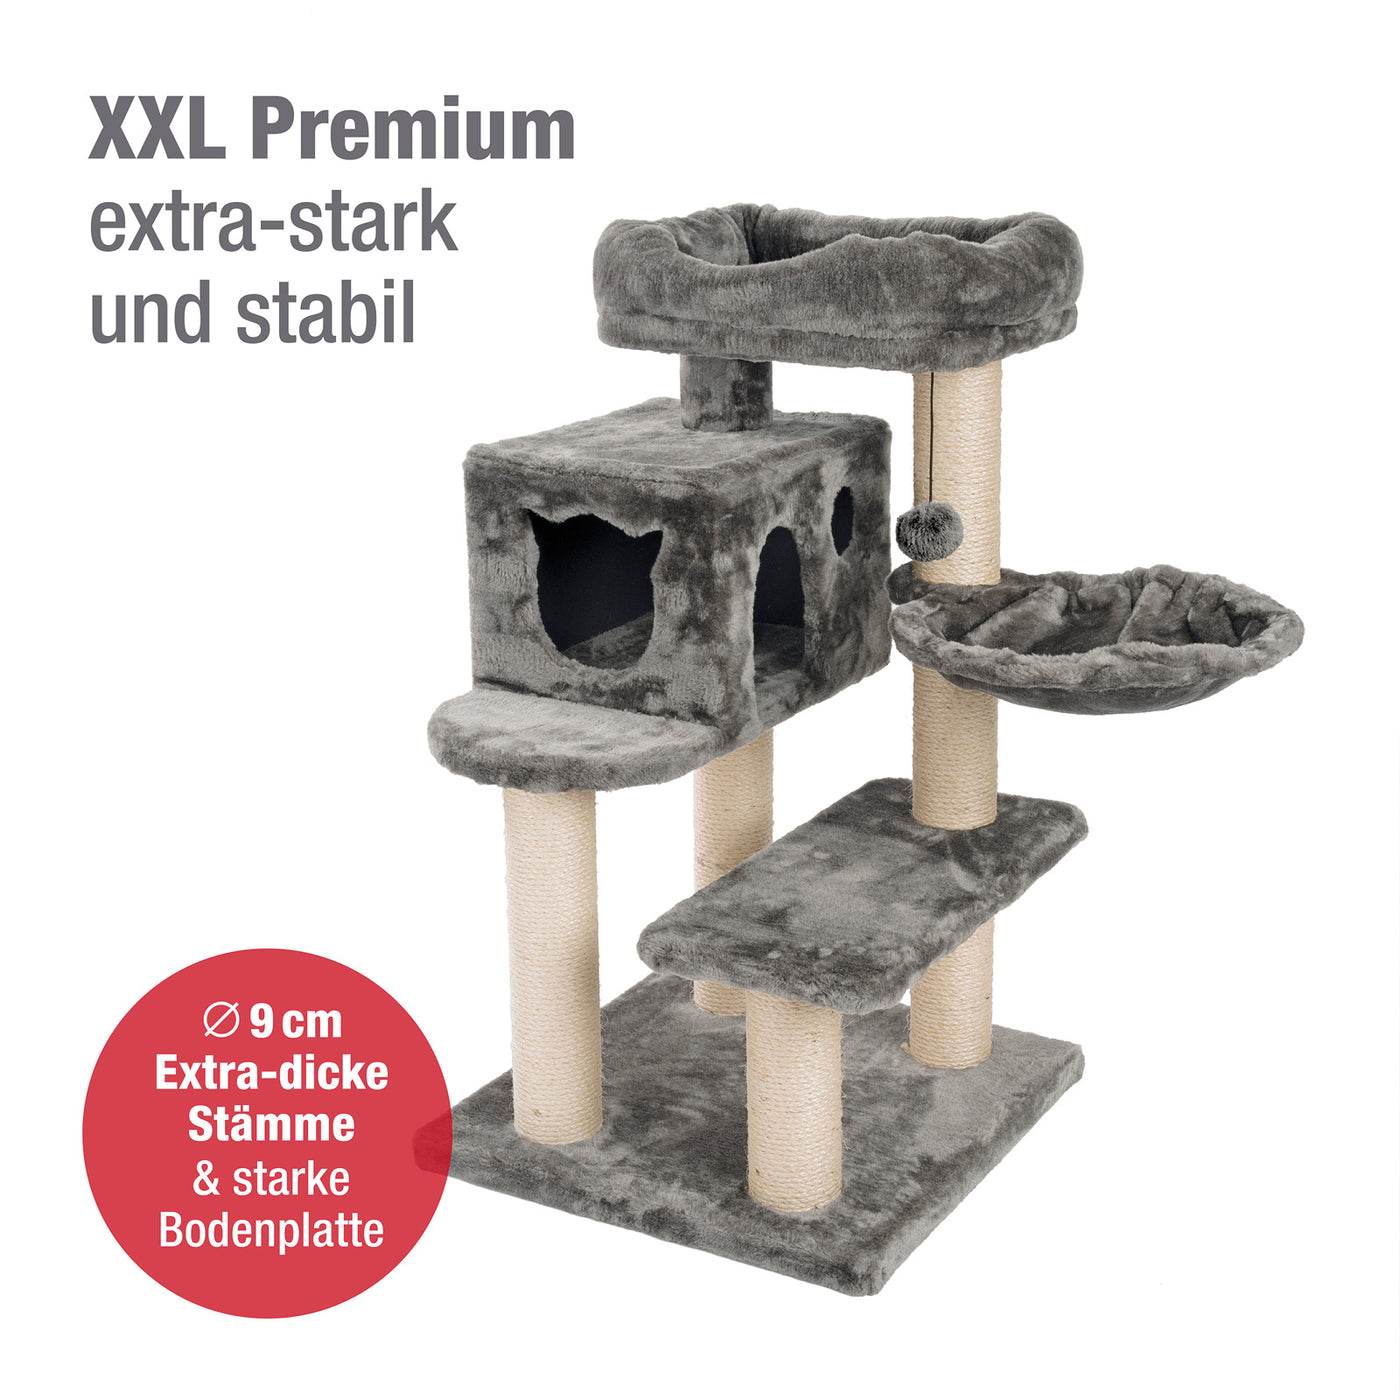 PCT6008, Premium Katzenbaum XXL H90cm, Stabil, Extra-Starke Bodenplatte und Dicke Stämme, Kuschelig-Weiches Soft-Plüsch, Höhle und Kuschel-Körbchen, PCT6008